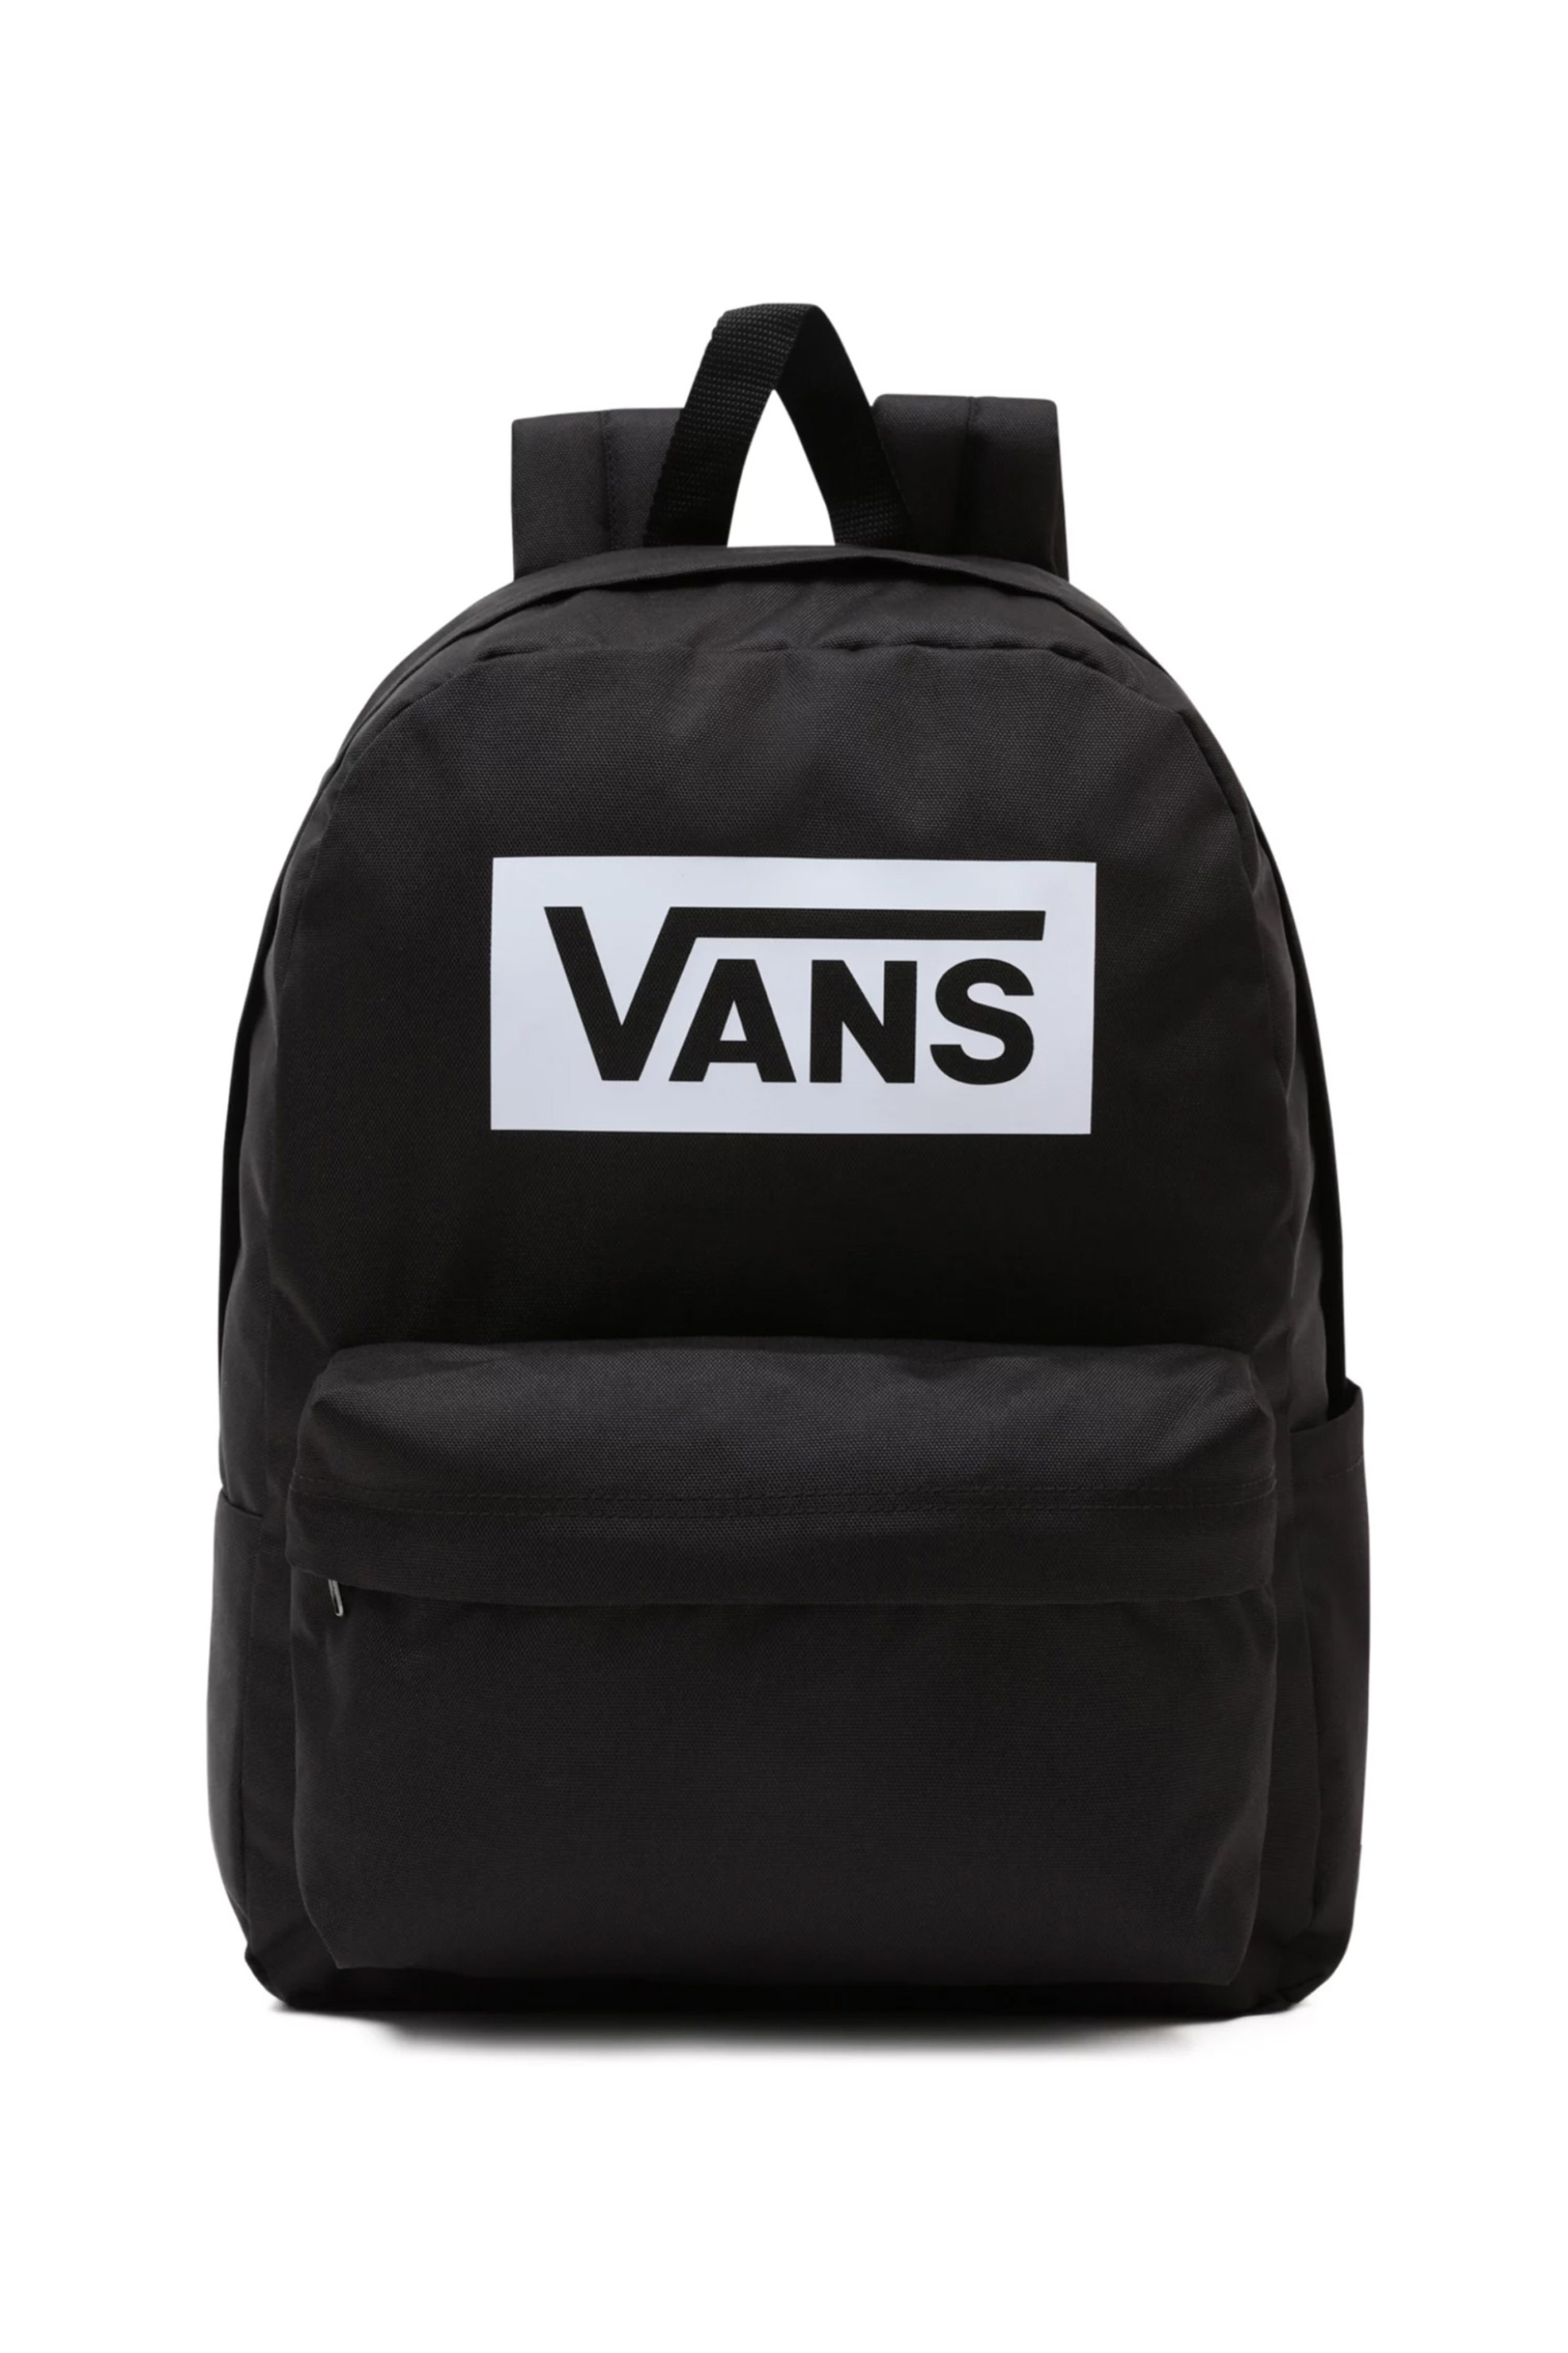 Ανδρική Μόδα > Ανδρικές Τσάντες > Ανδρικά Σακίδια & Backpacks Vans ανδρικό backpack μονόχρωμο με bold contrast logo graphic "Old skool boxed" - VN0A7SCHBLK1 Μαύρο